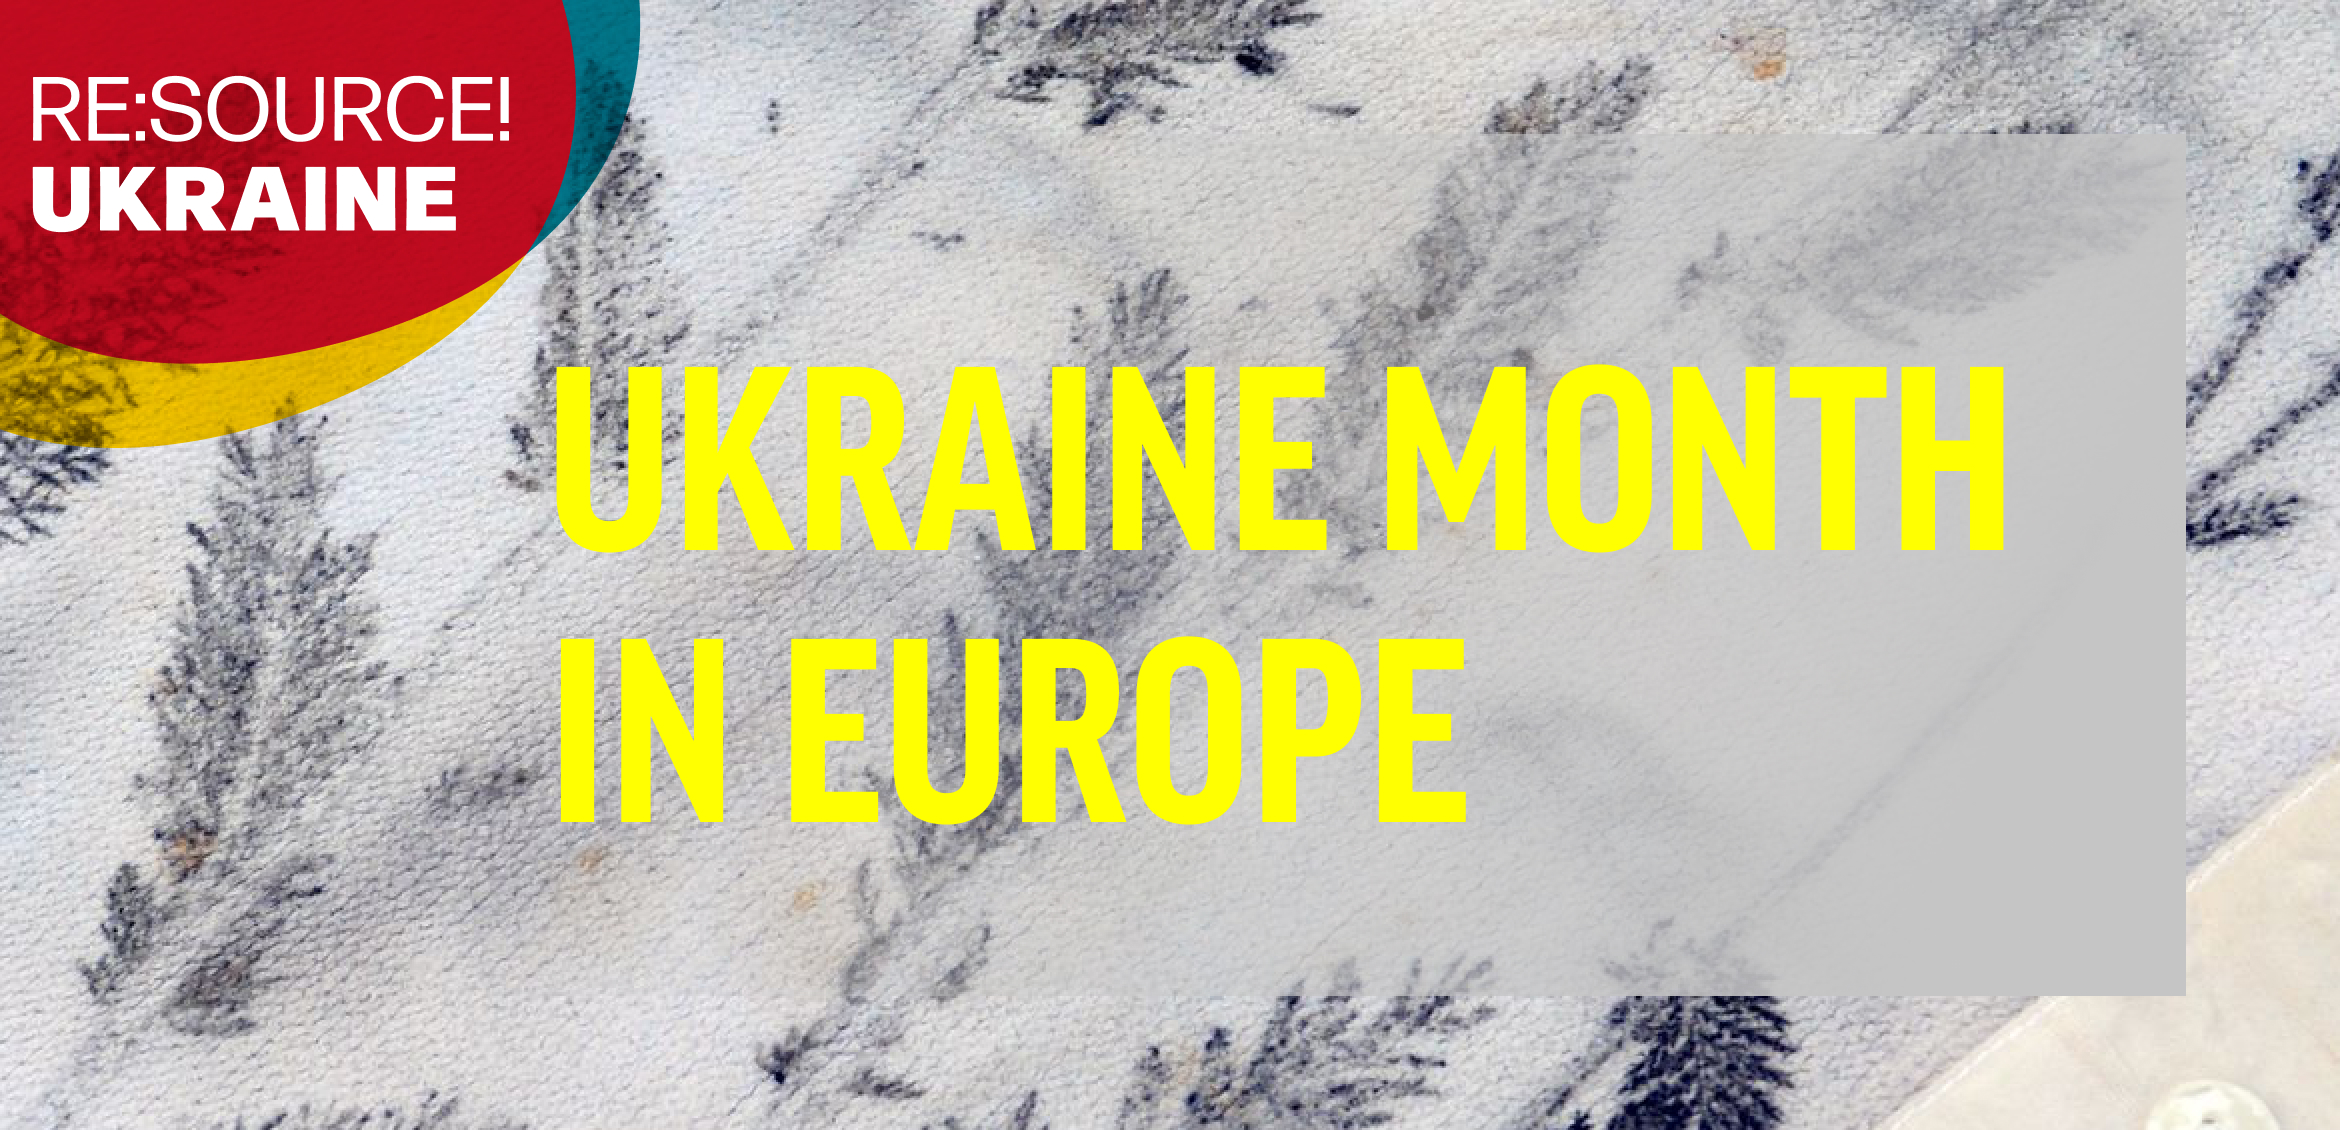 Ukraine Month in Europe